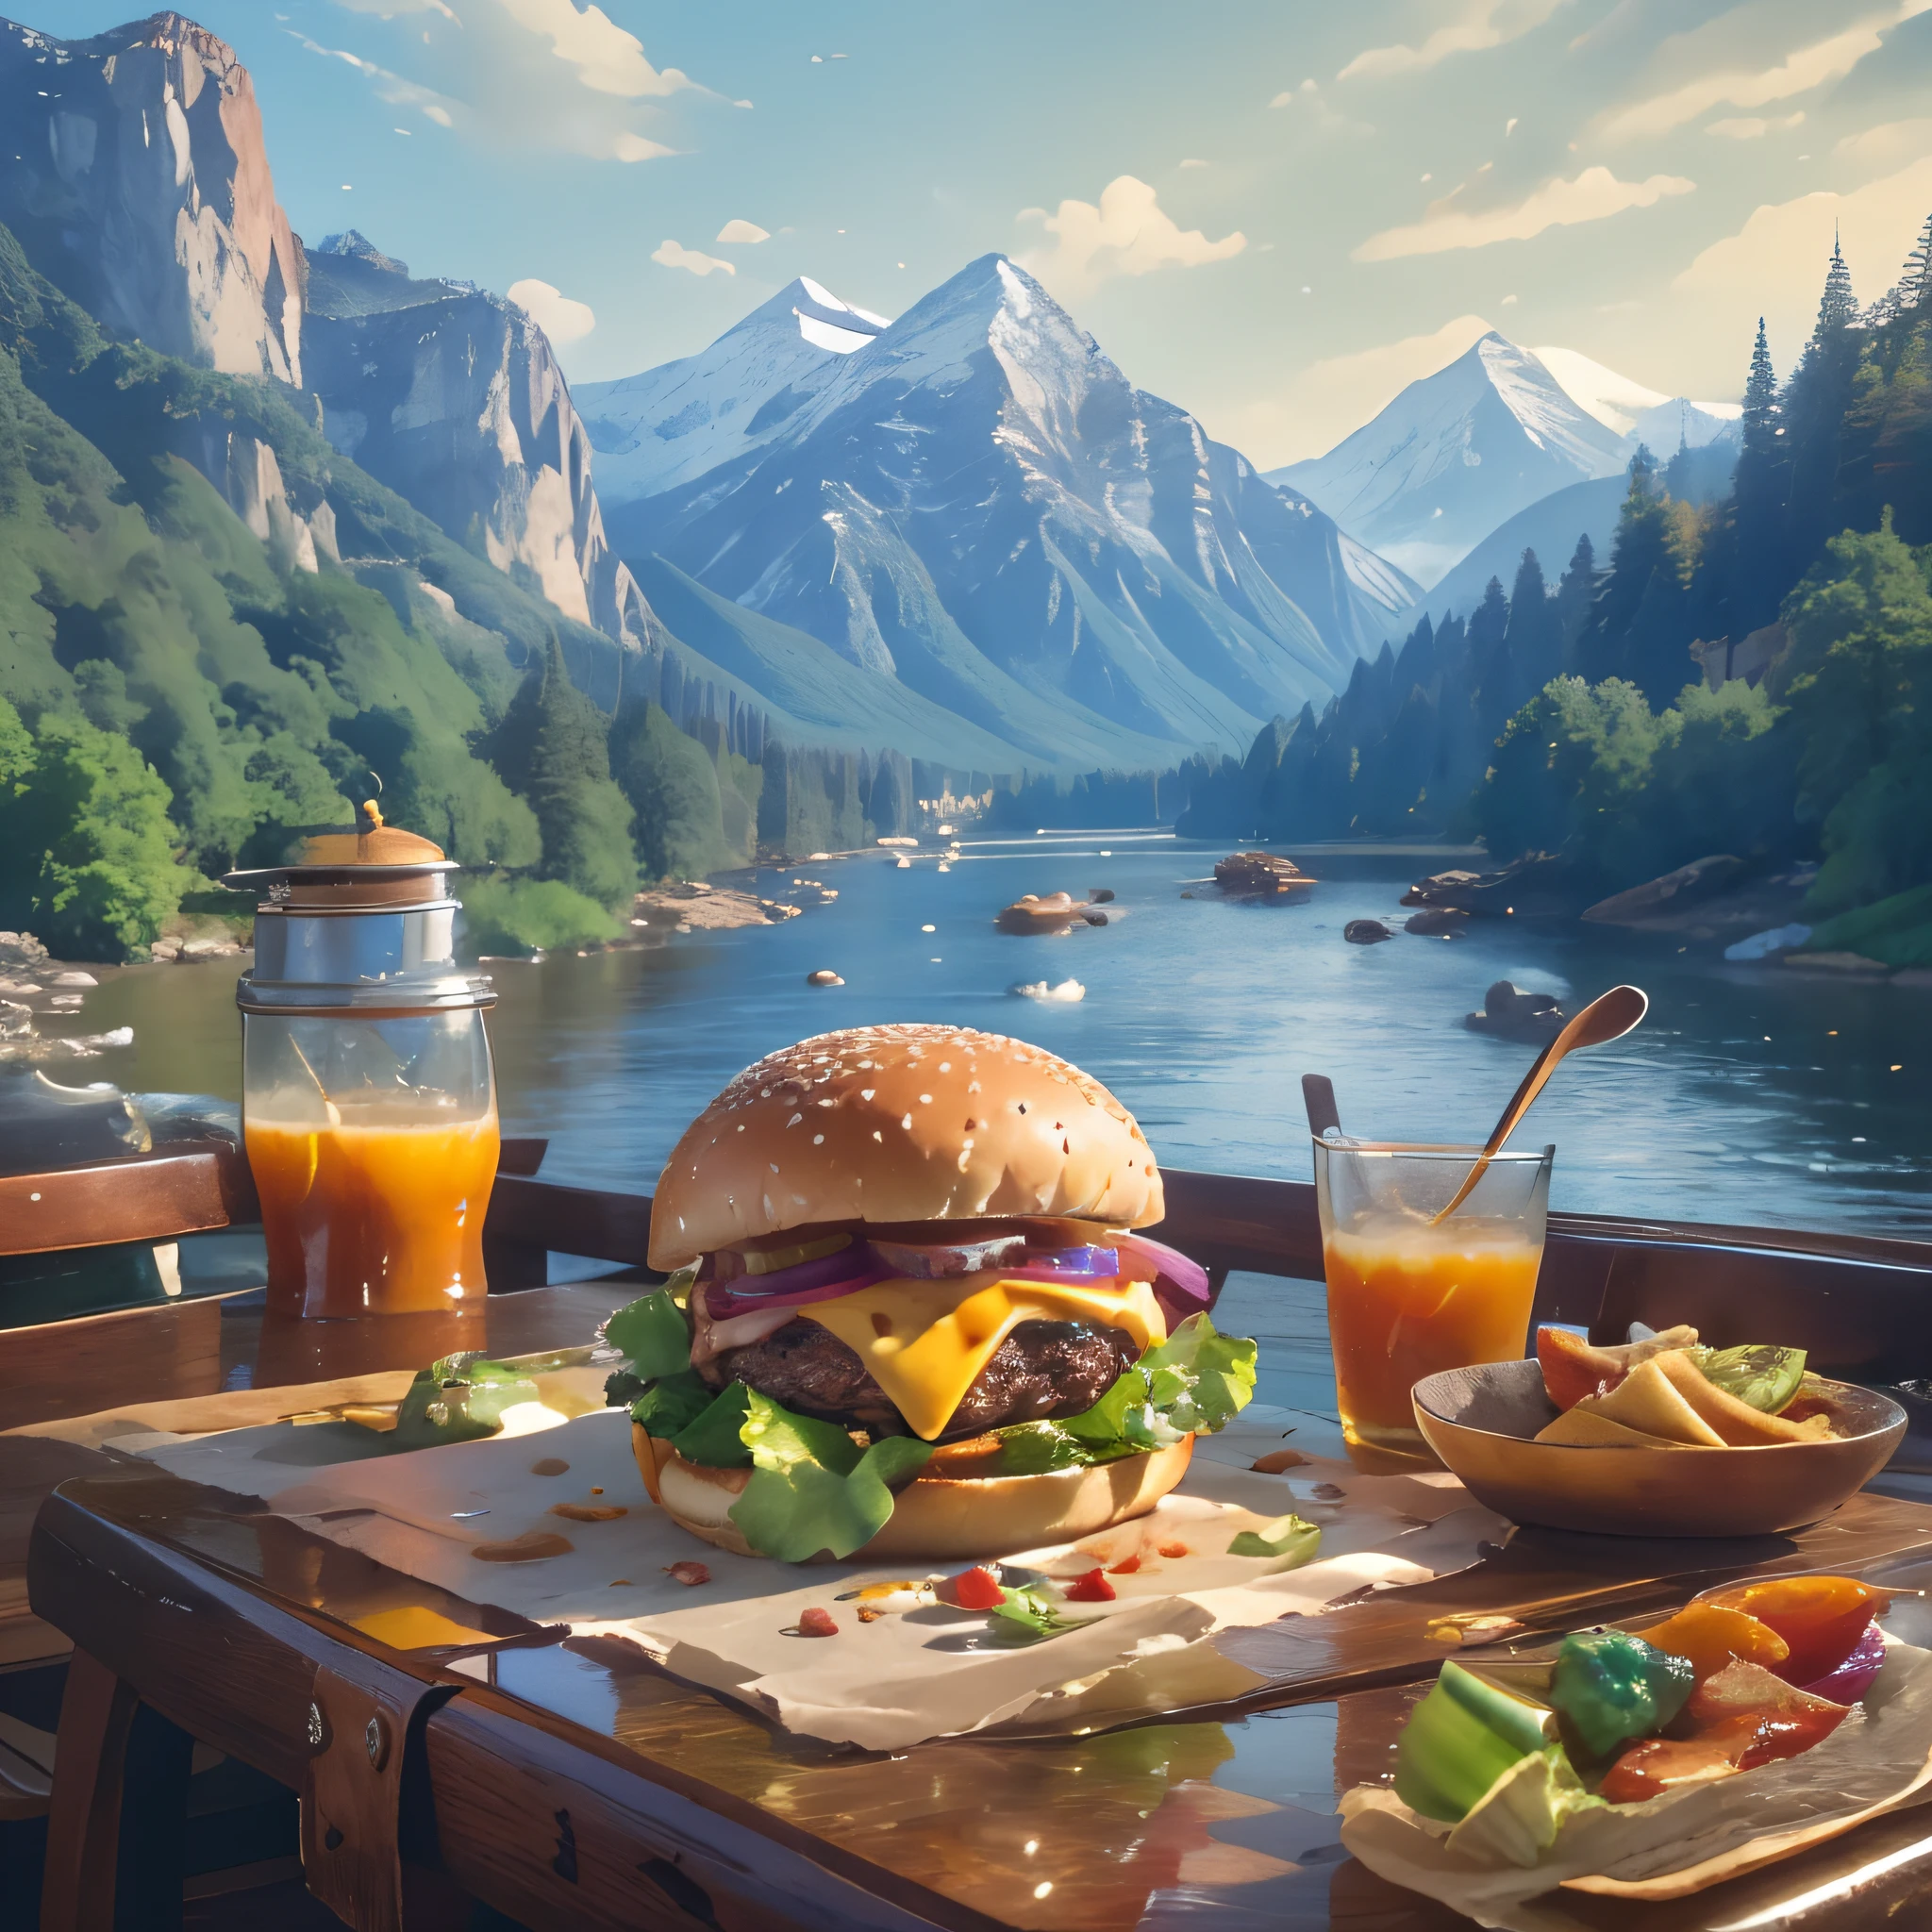 (傑作, 最高品質, 最高品質, 美しく、審美的:1.2), 非常に詳細な, 最高の詳細,レストランのカウンタートップに置かれたハンバーガー定食のクローズアップ，朝の栄養価の高い朝食，背景は山と川の風景